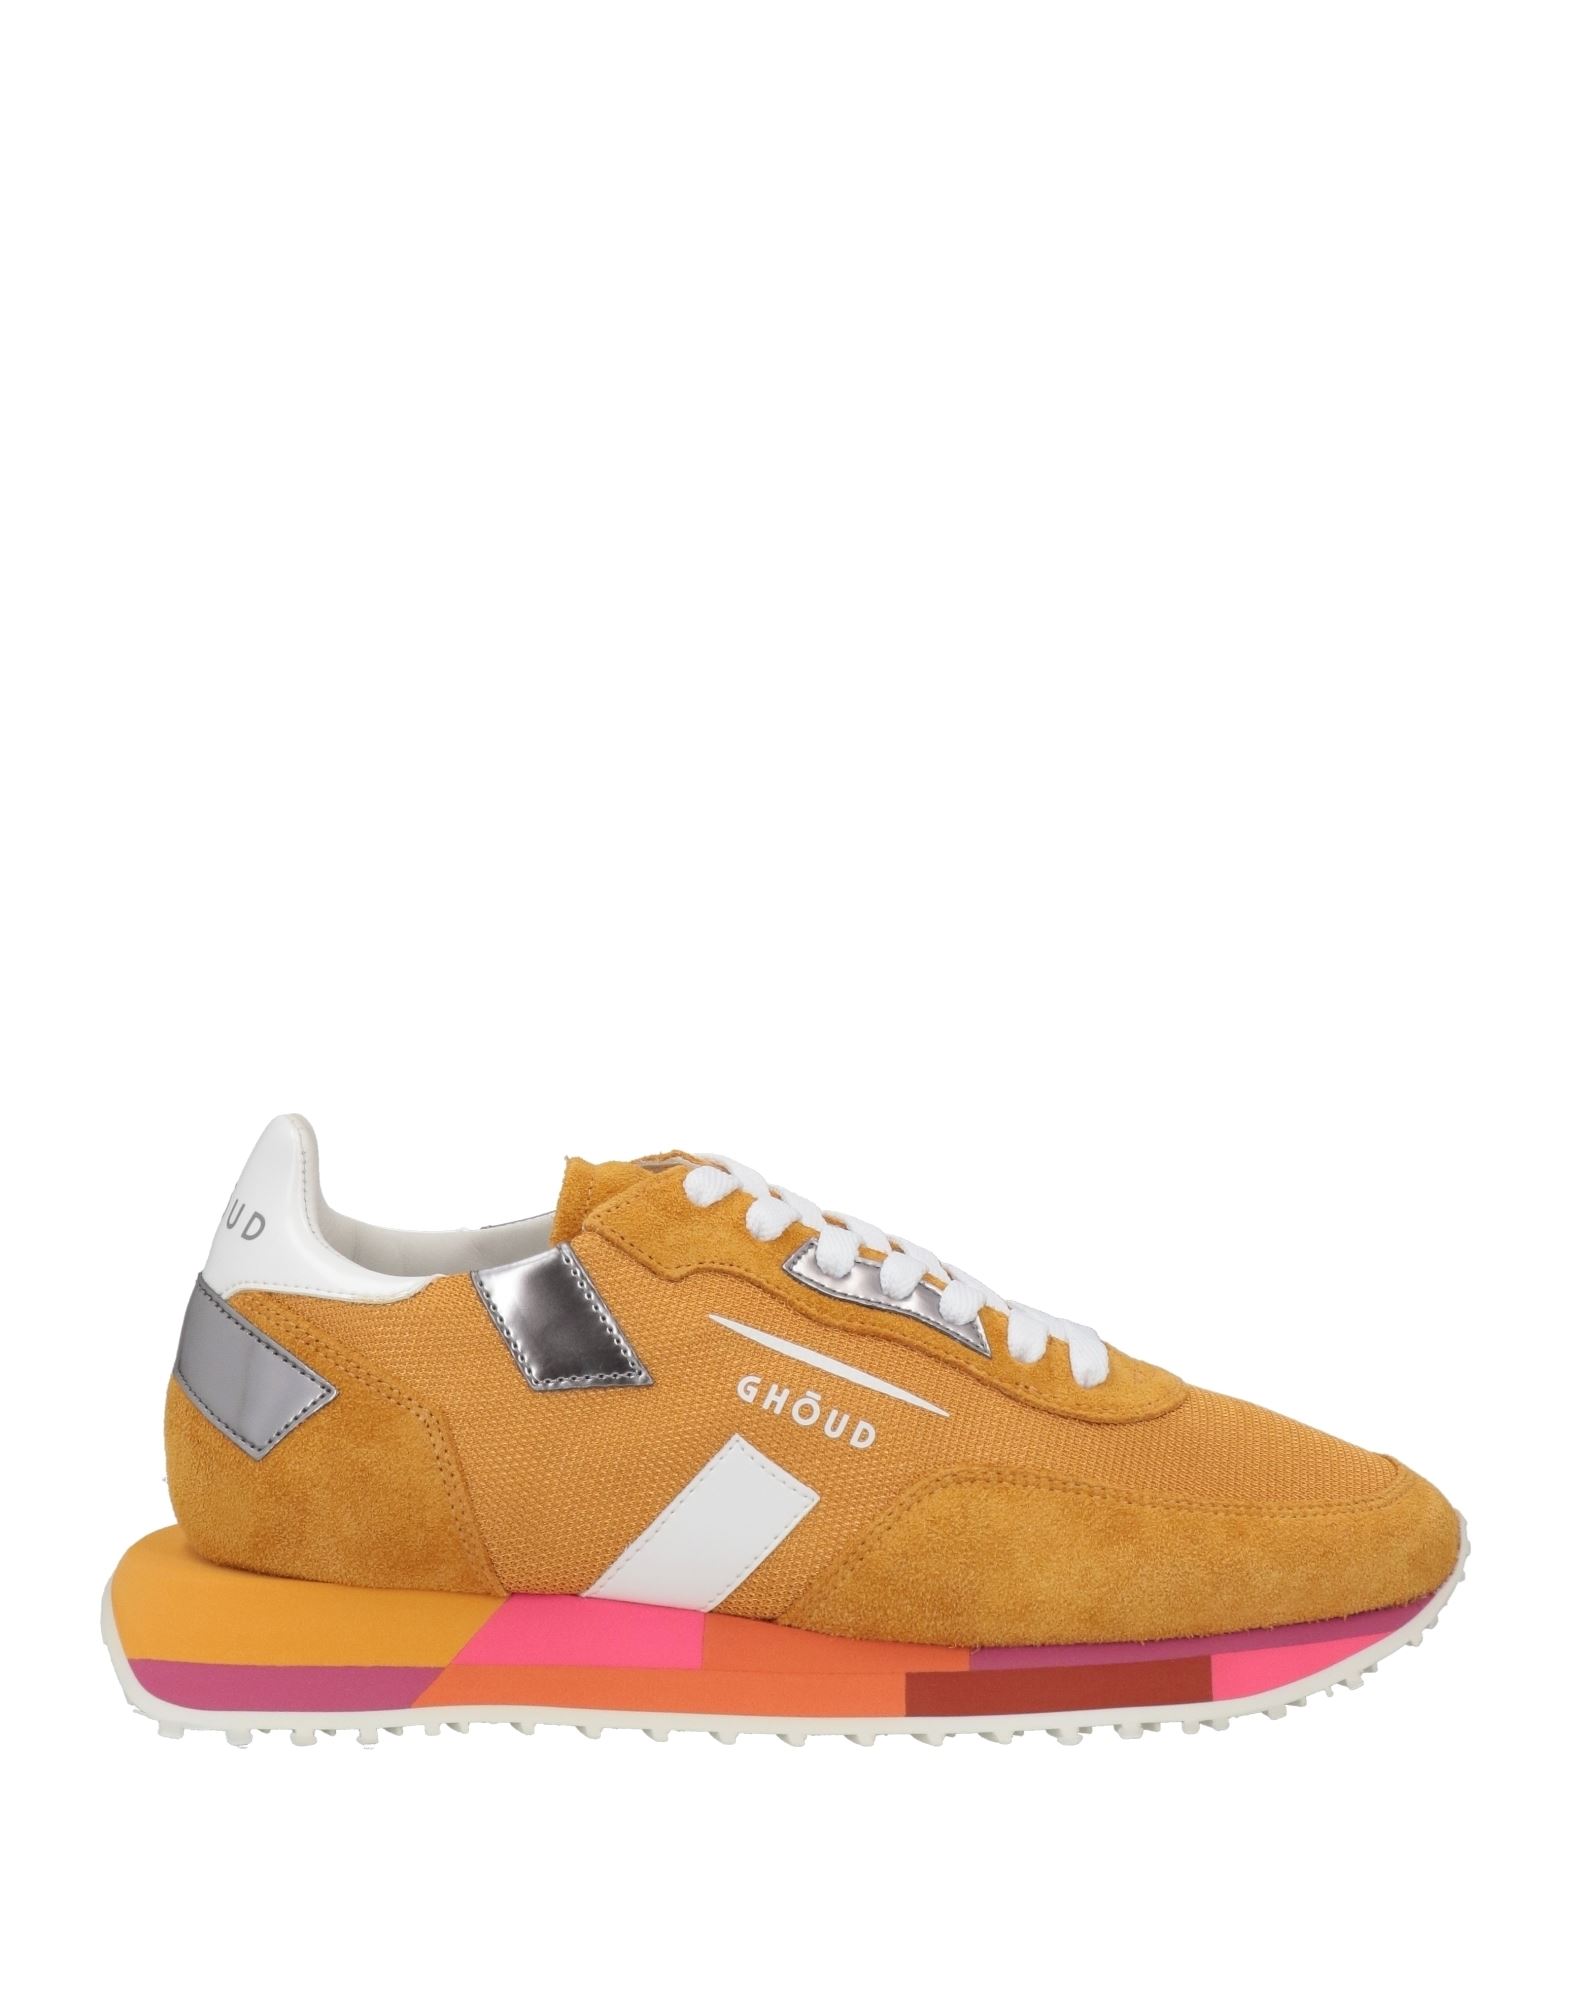 Ghoud Venice Sneakers In Orange